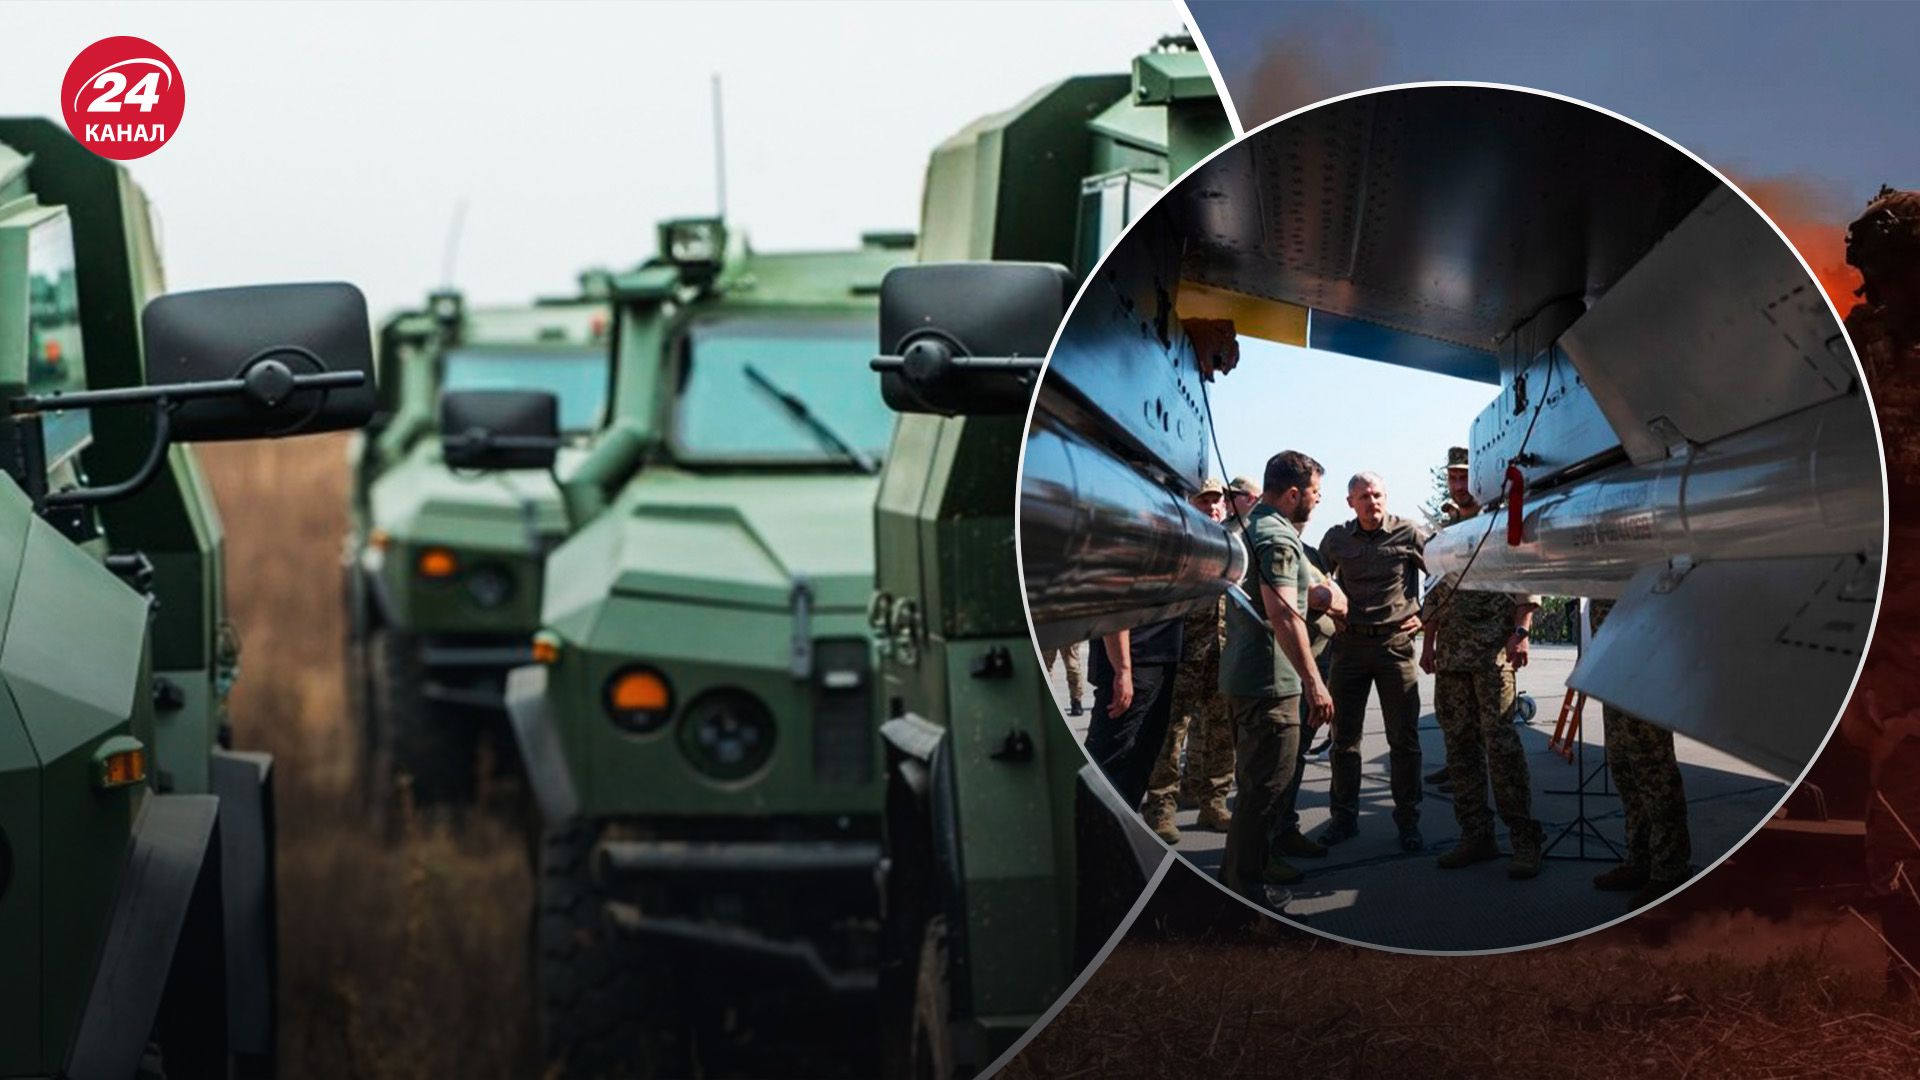 Форум оборонных индустрий - какое его значение для развития украинского ВПК - 24 Канал